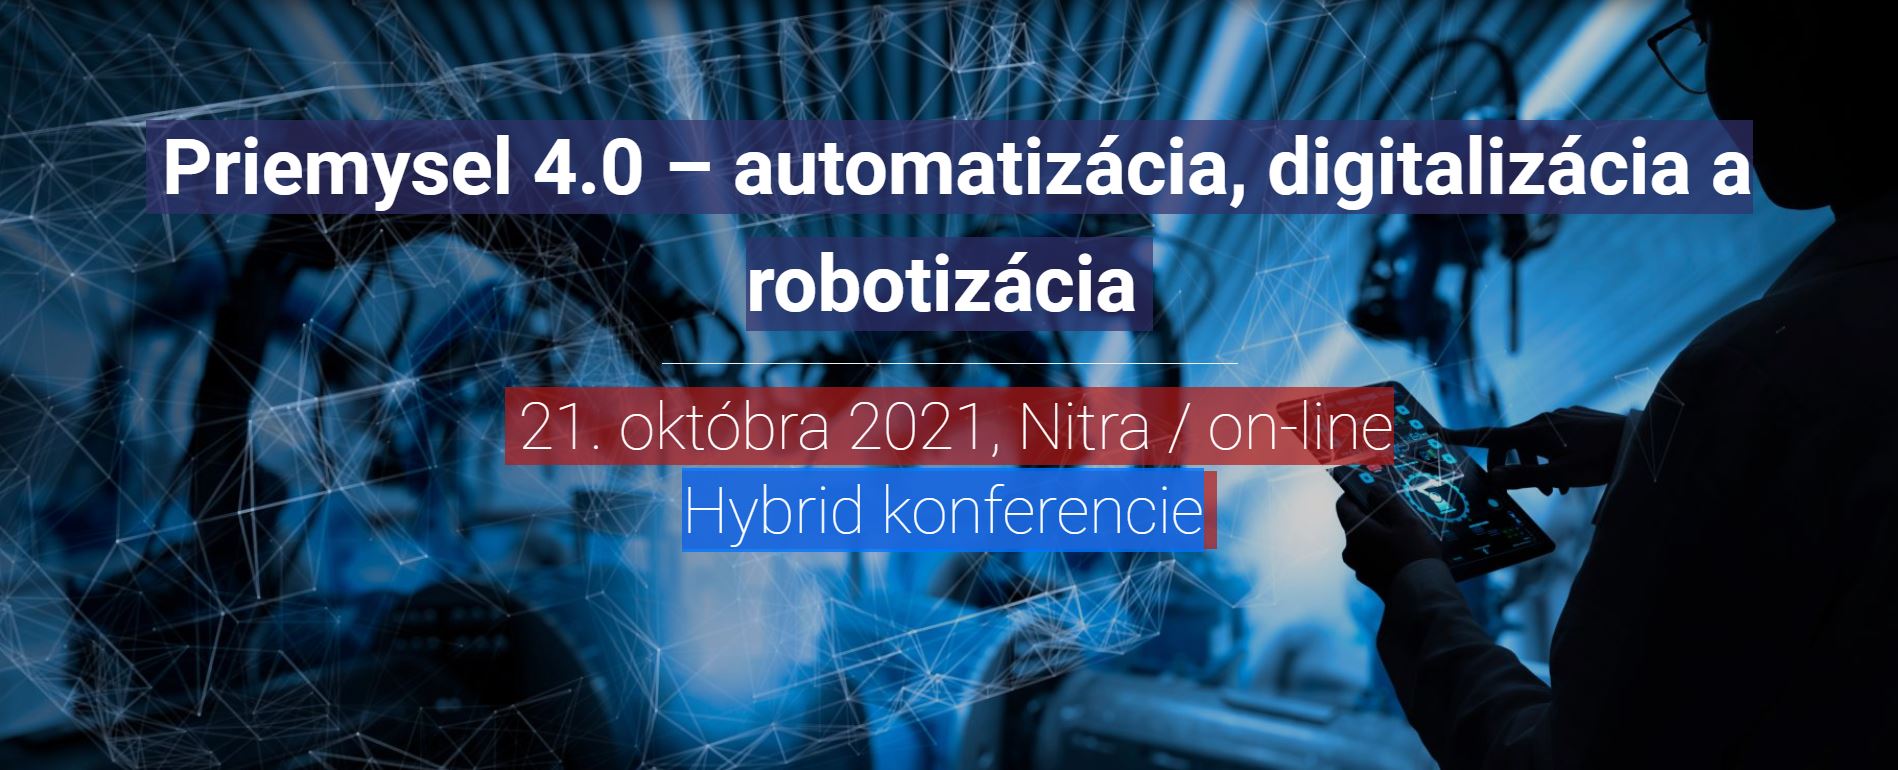 Hybrid konferencia Priemysel 4.0 – automatizácia, digitalizácia a robotizácia